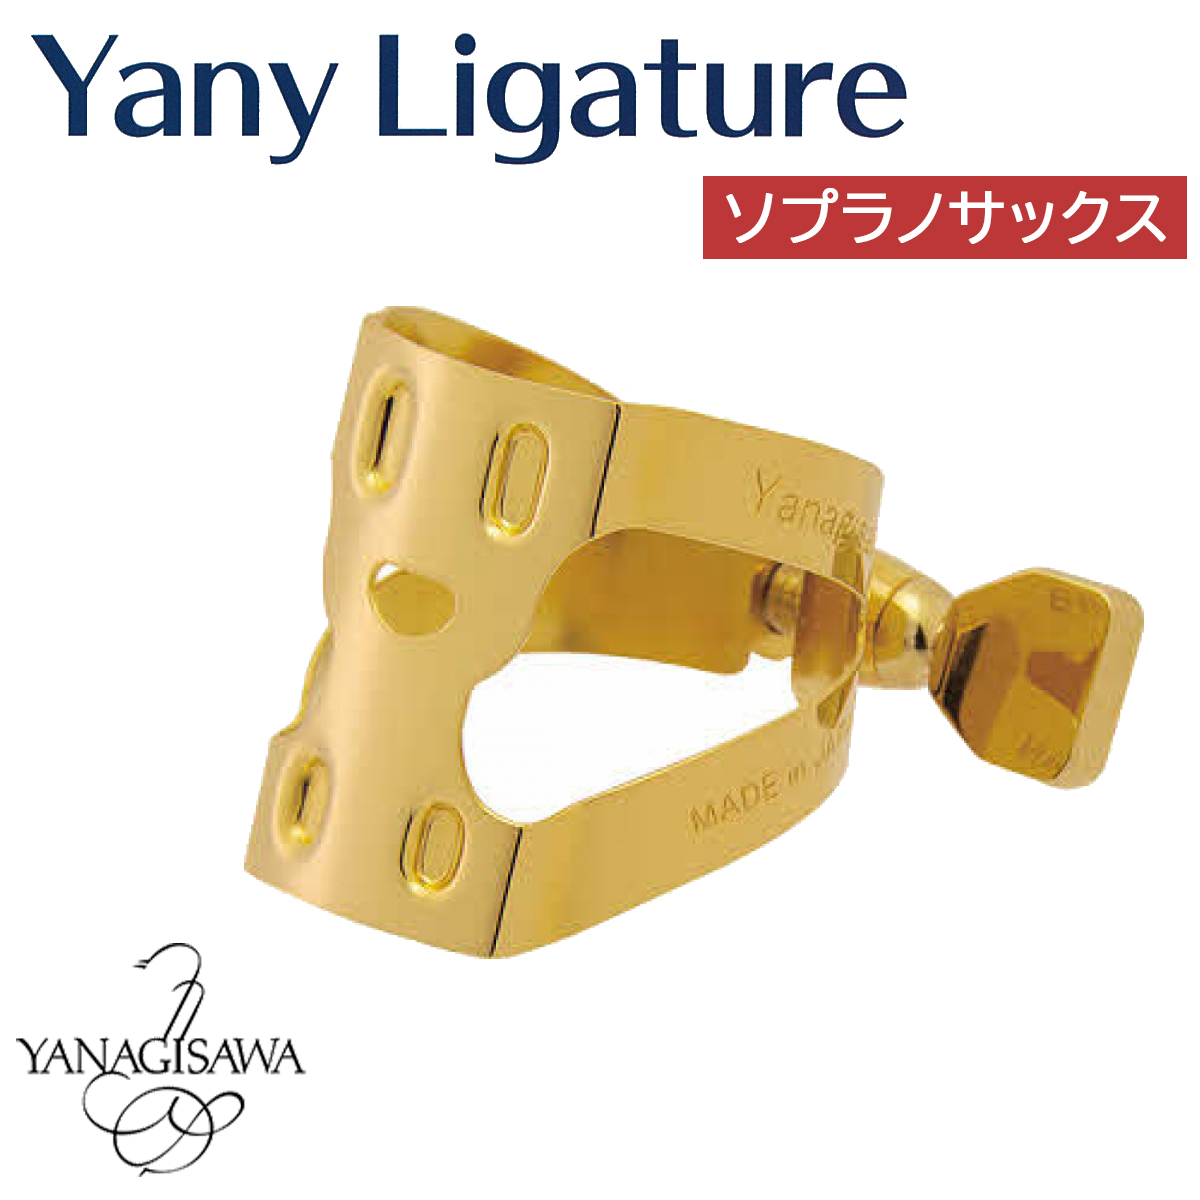 YANAGISAWA Yany Ligature ソプラノサックス用 ヤニー・ニコちゃん 【ヤナギサワ ヤニー・リガチャー】